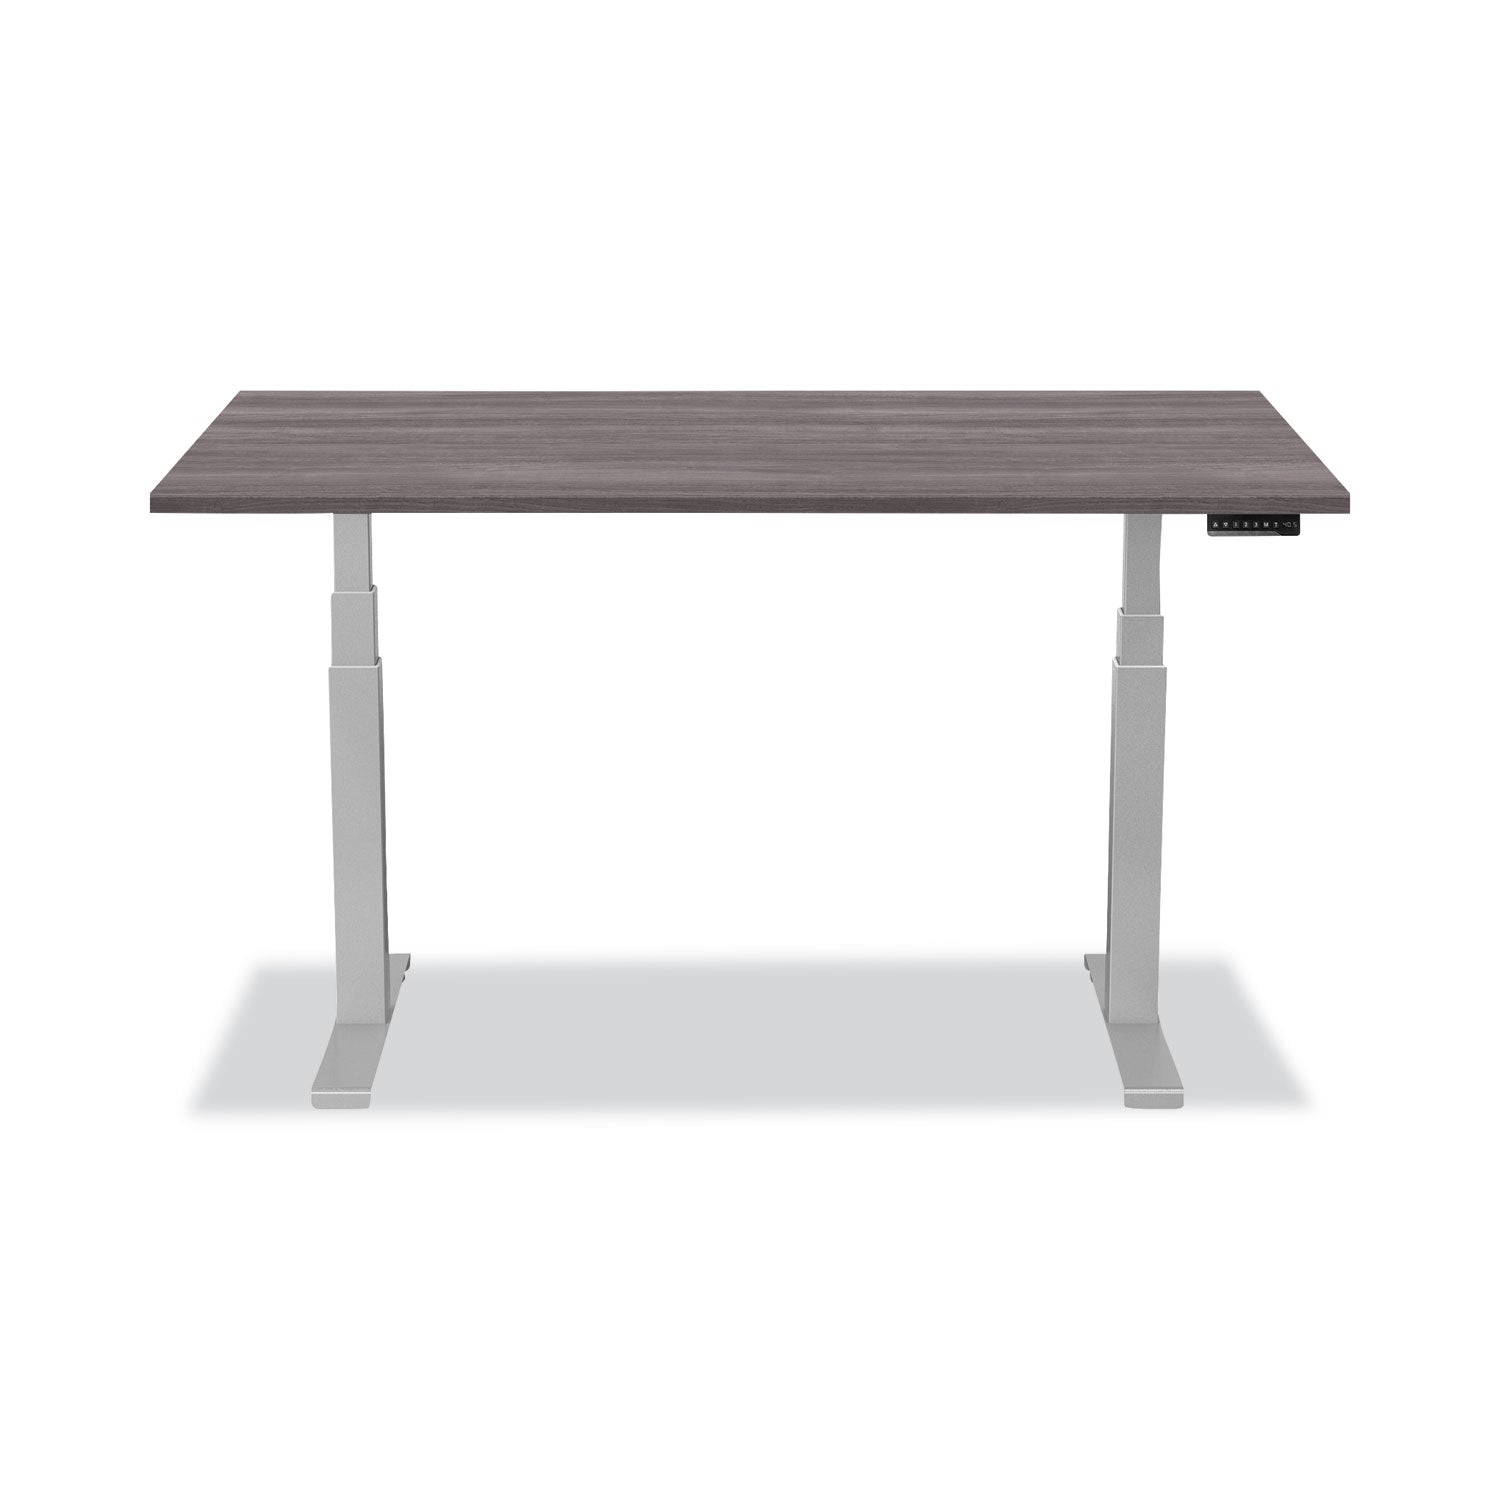 levado-laminate-table-top-48-x-24-gray-ash_fel9650001 - 3